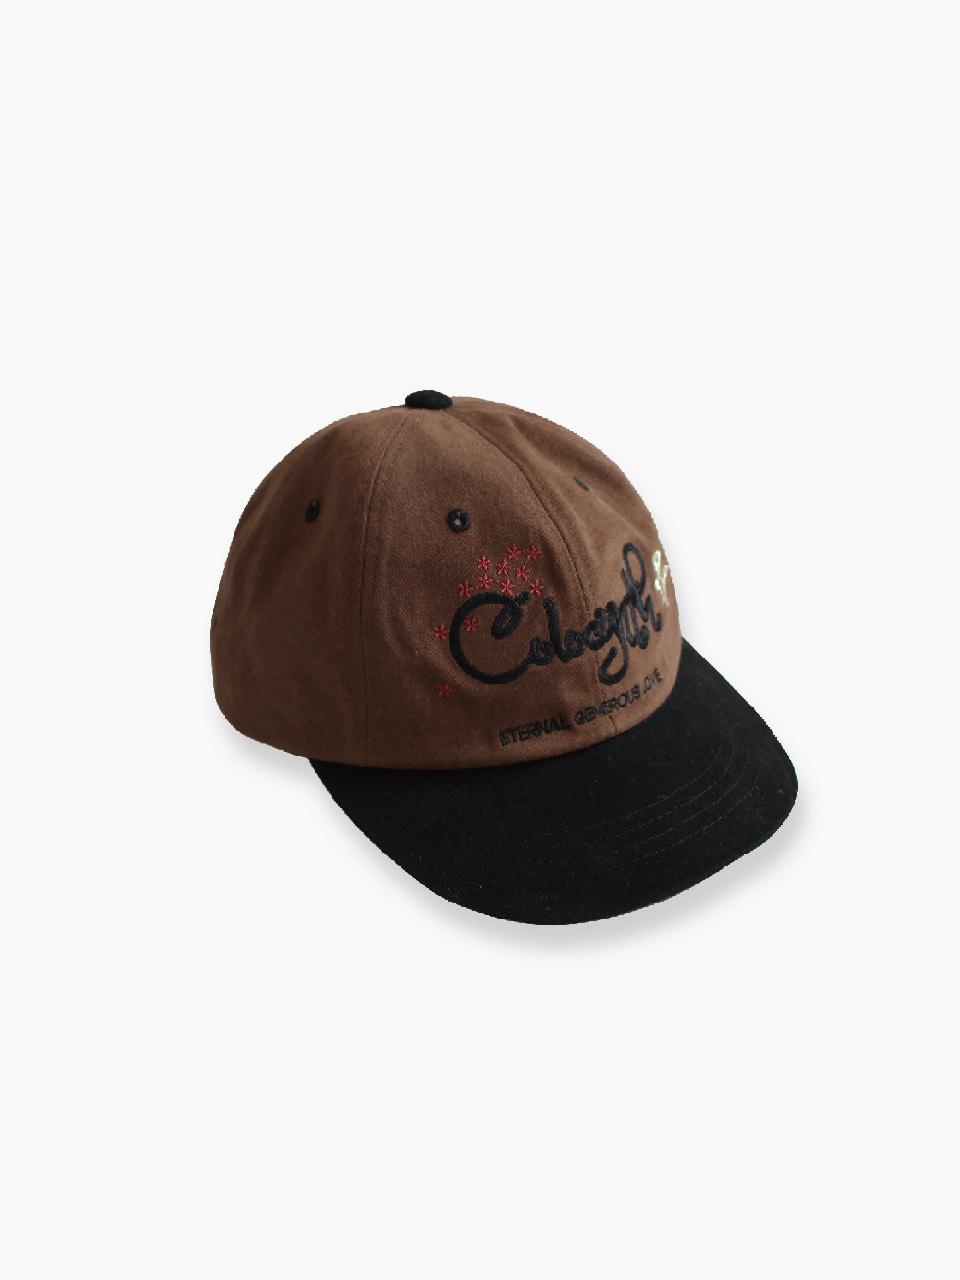 SOPE CAP BROWN BLACK